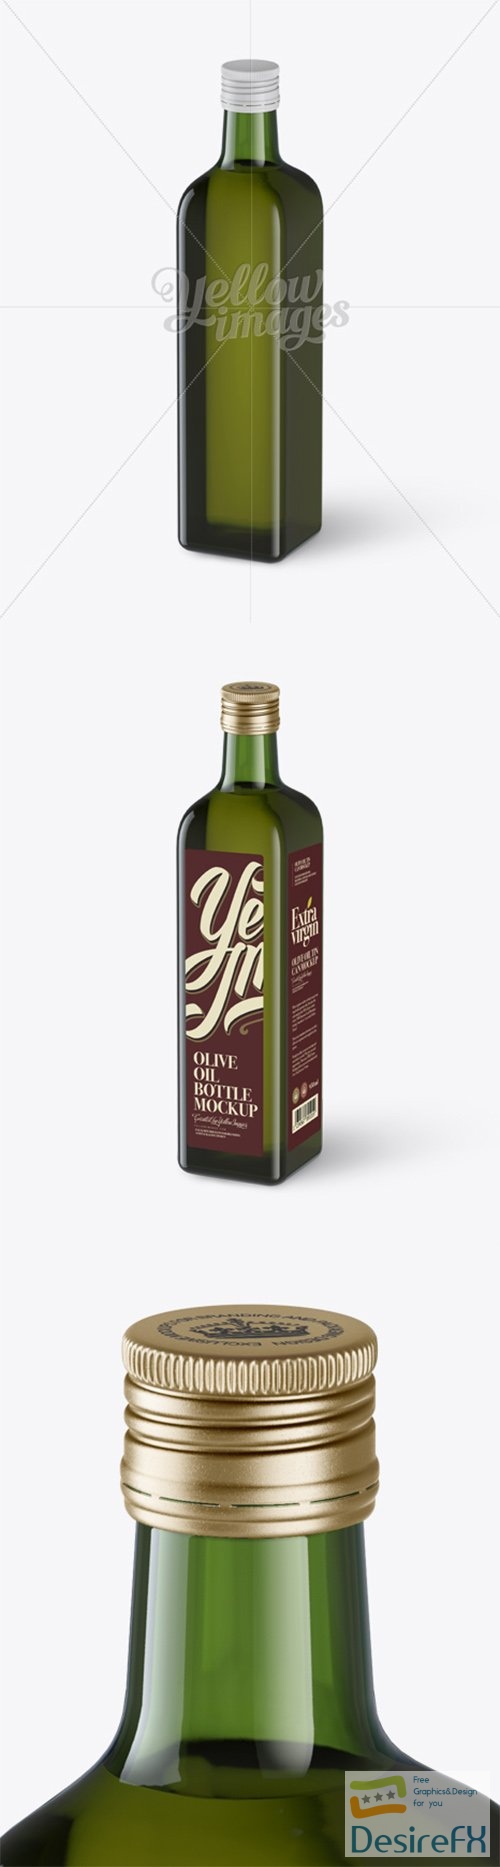 0.75L Green Glass Olive Oil Bottle Mockup - Halfside view (High-Angle Shot) 13927 TIF